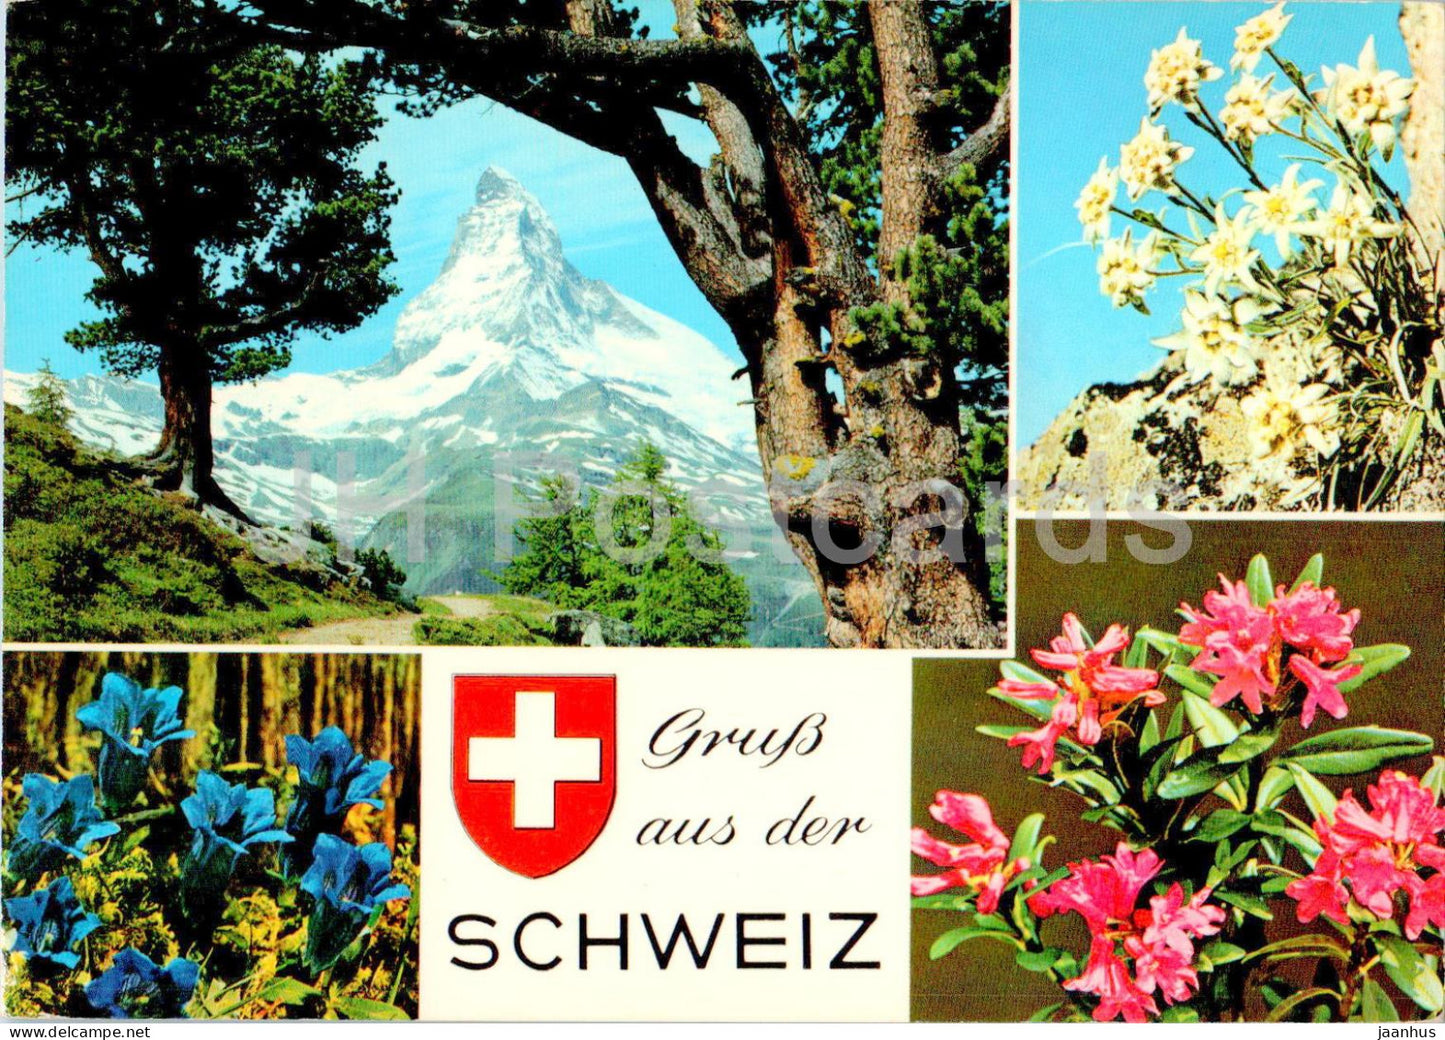 Gruss aus der Schweiz - plants - multiview - 483 - Switzerland - used - JH Postcards